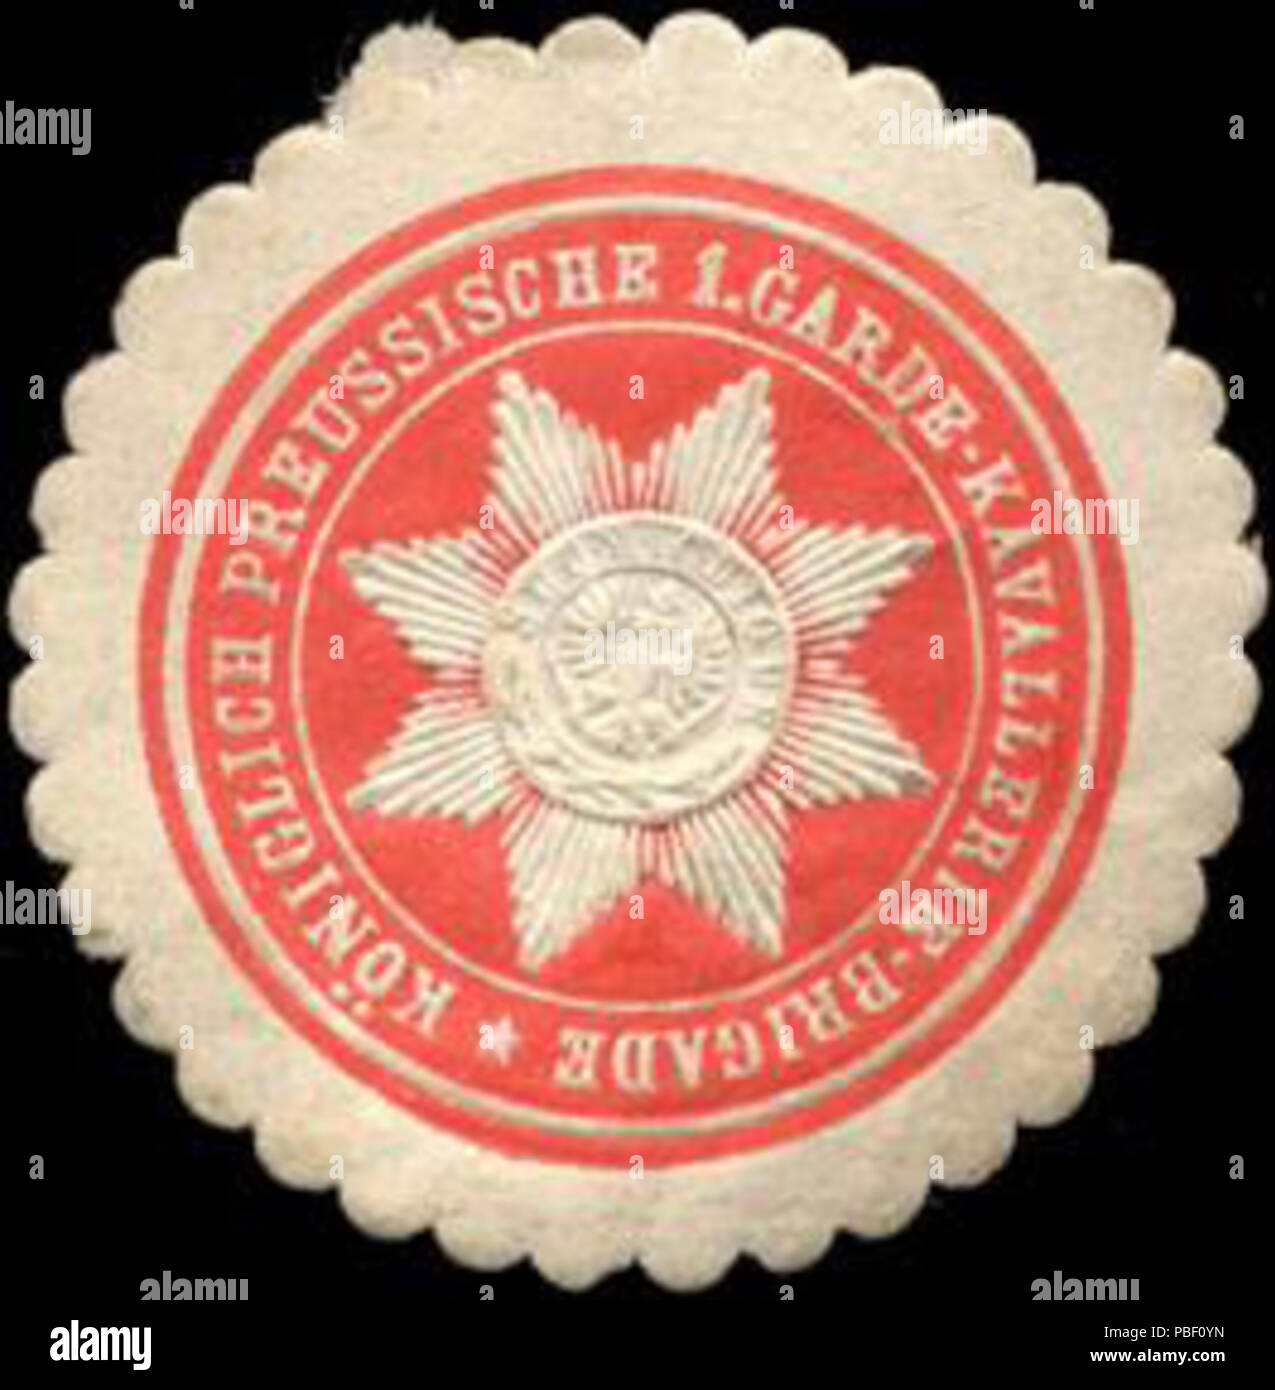 Alte Briefverschlussmarke aus Papier, welche seit ca. 1850 von Behoerden, Anwaelten, Notaren und Firmen zum verschliessen der Post verwendet wurde. 1450 Siegelmarke Königlich Preussische 1. Garde - Kavallerie - Brigade W0210772 Stock Photo